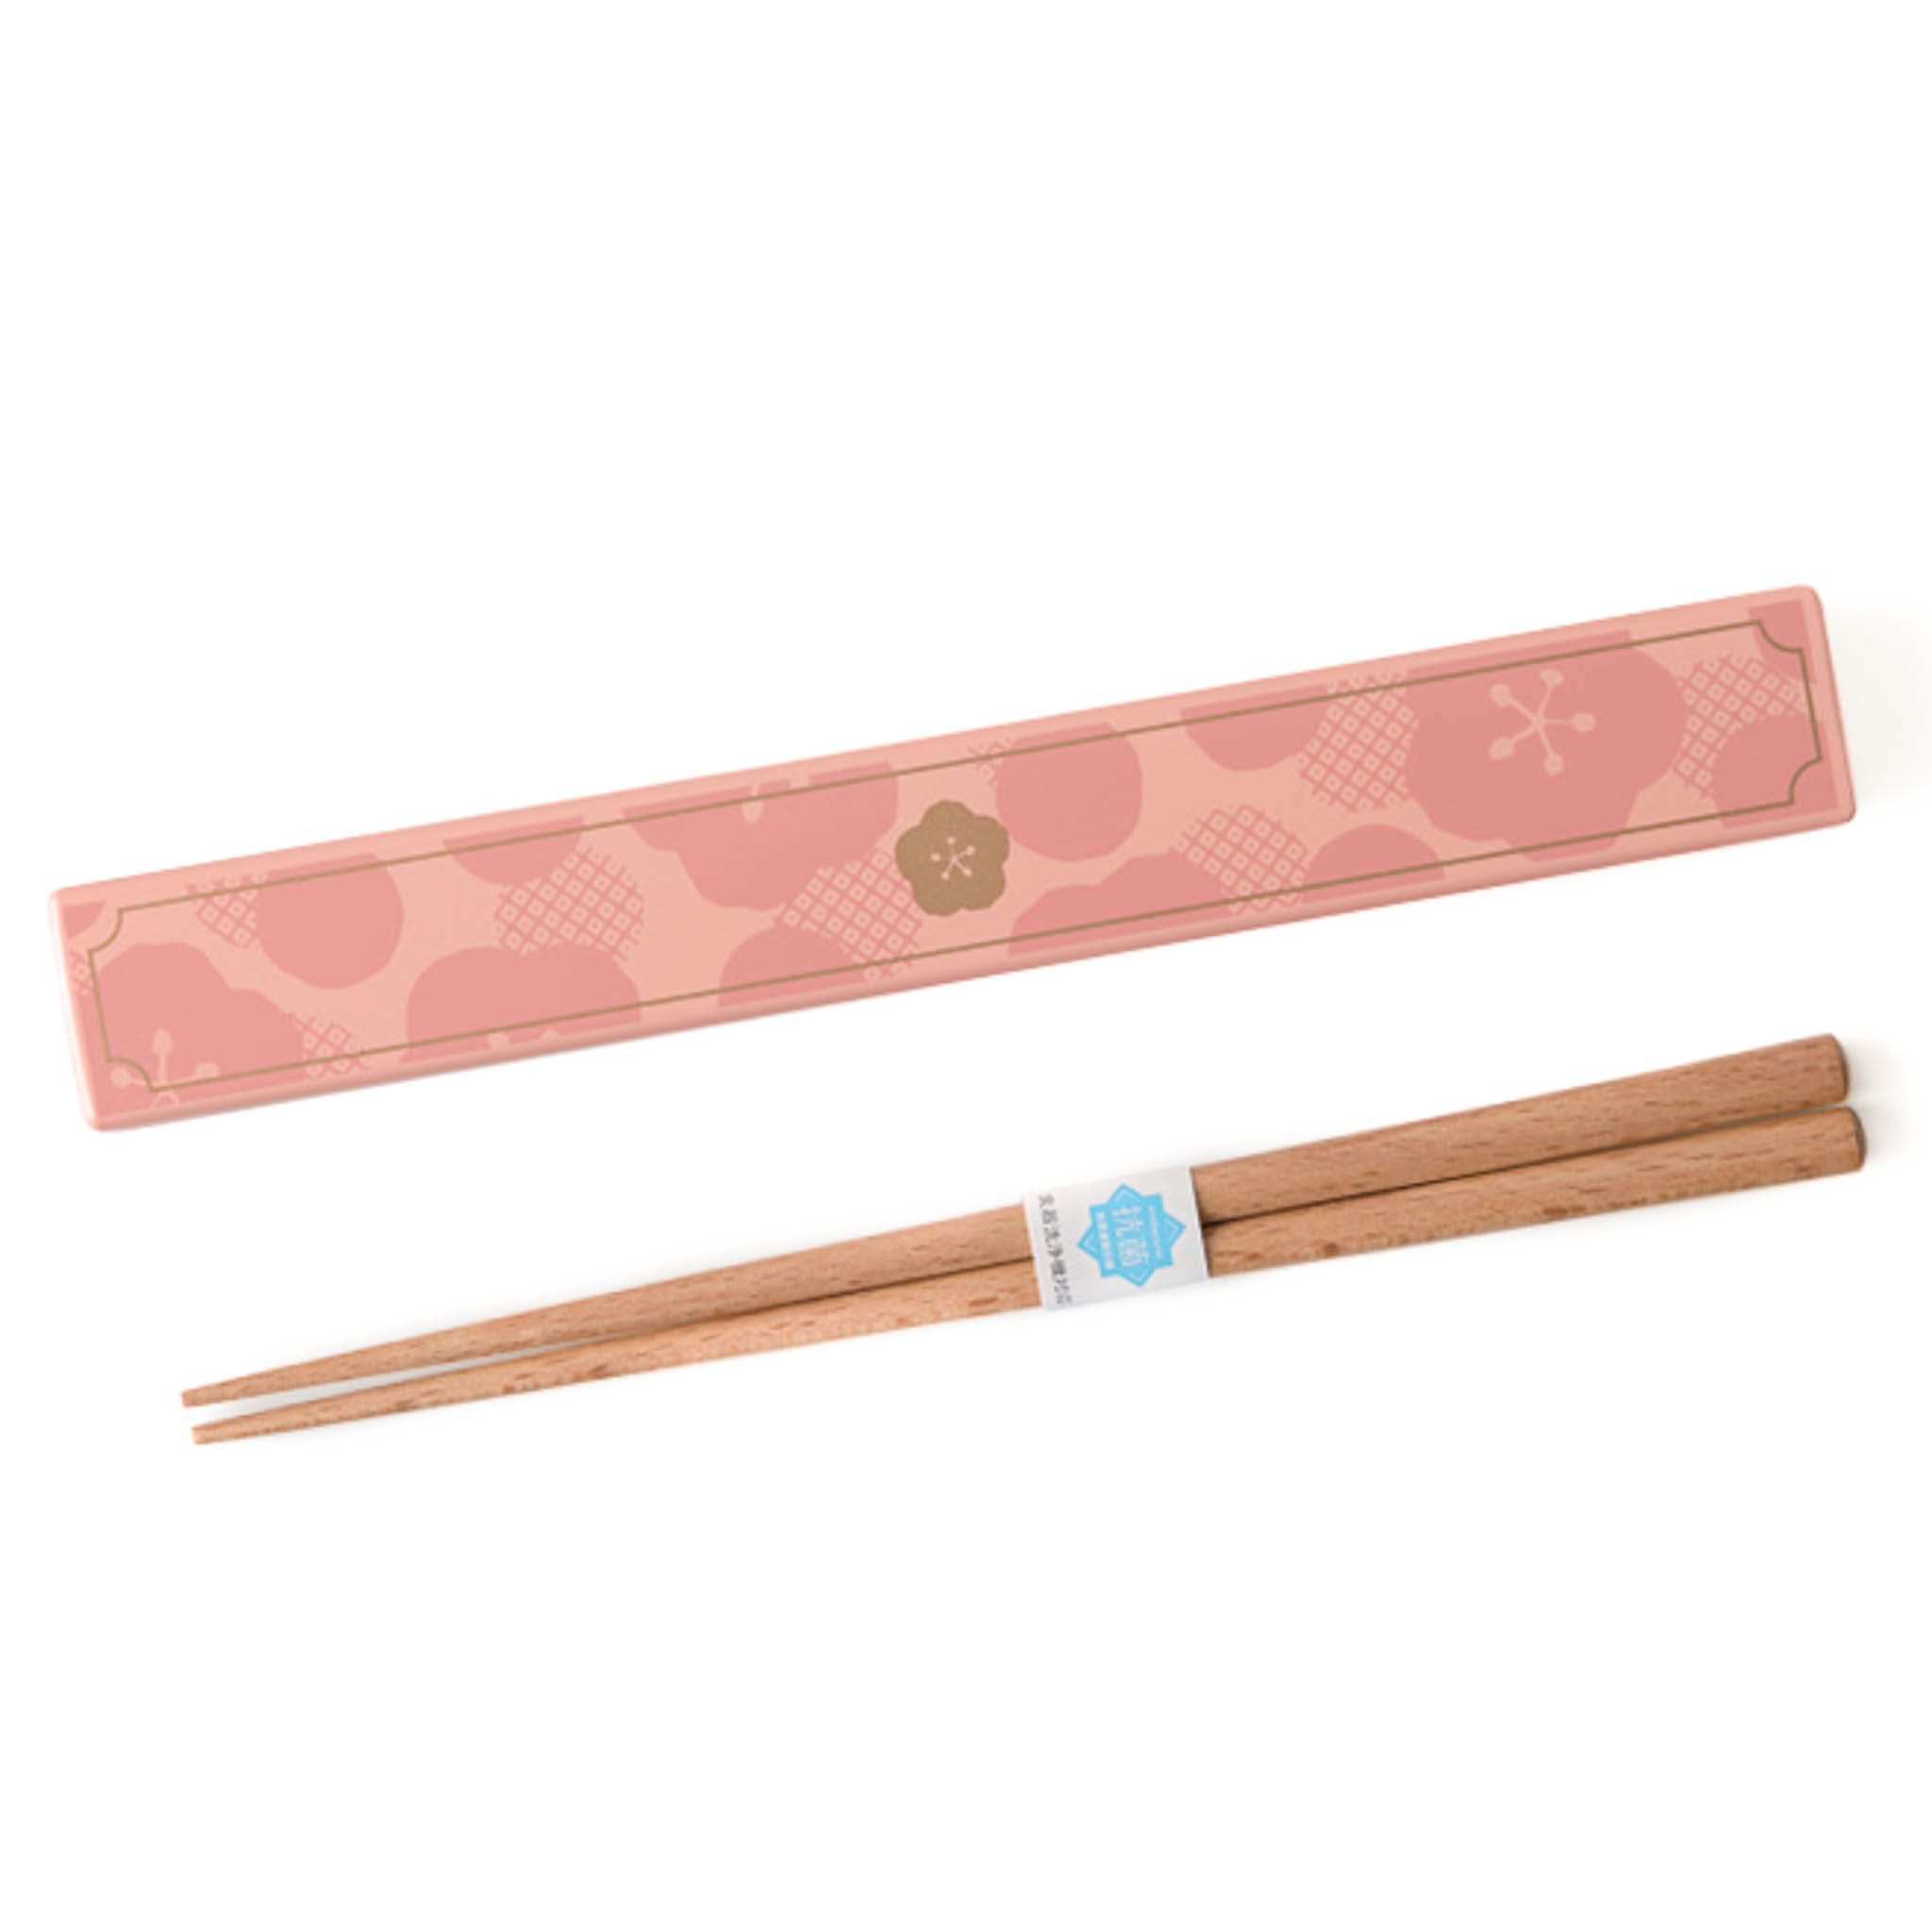 Takenaka Wooden Chopsticks in Pink Case